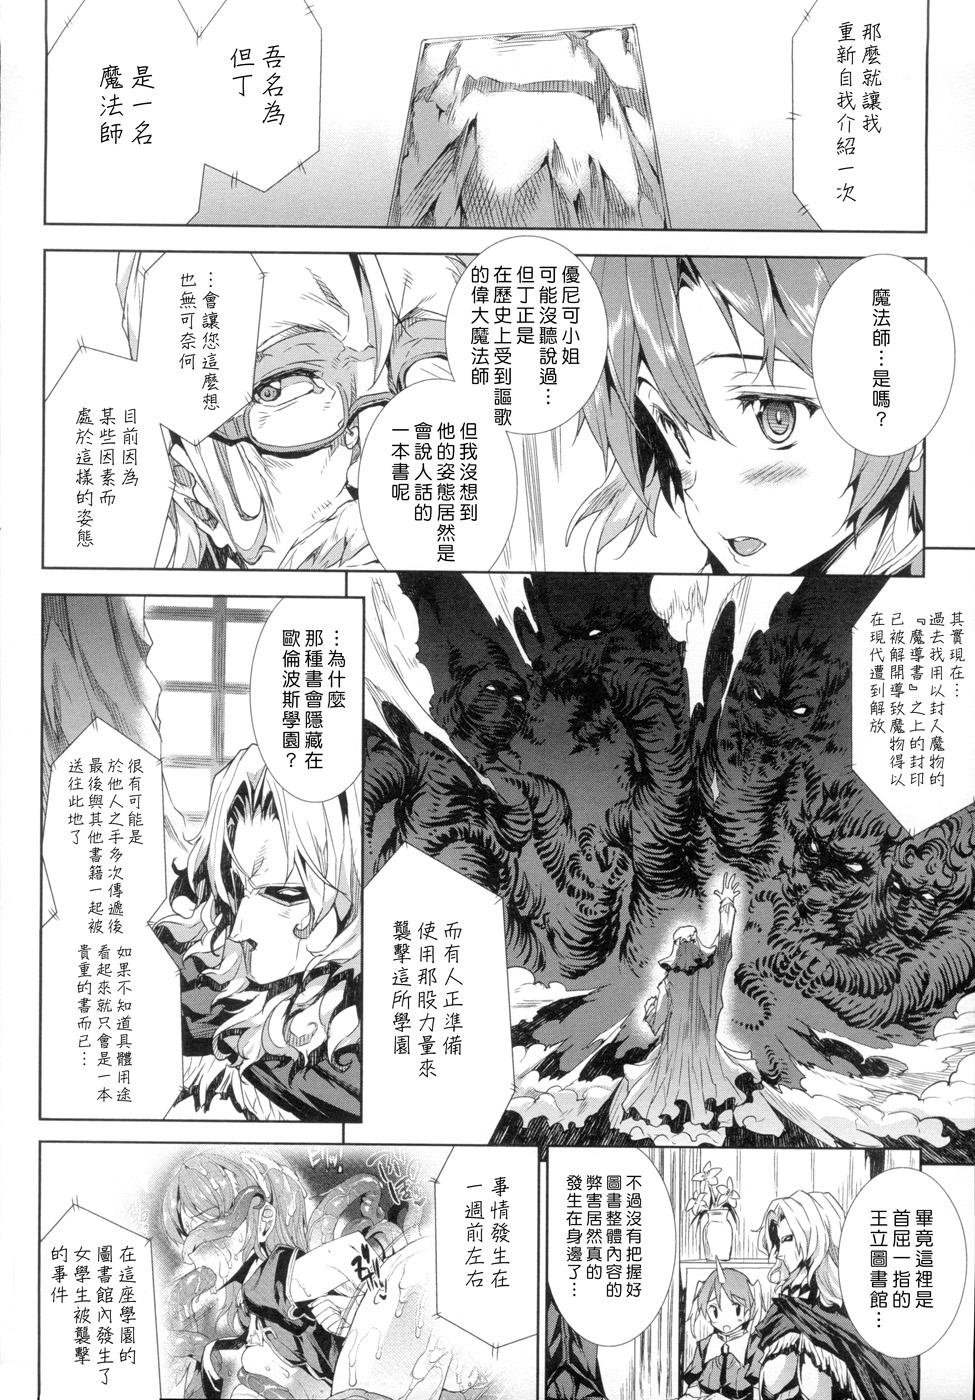 [Erect Sawaru] Shinkyoku no Grimoire -PANDRA saga 2nd story- Ch. 1-4 [Chinese] 28